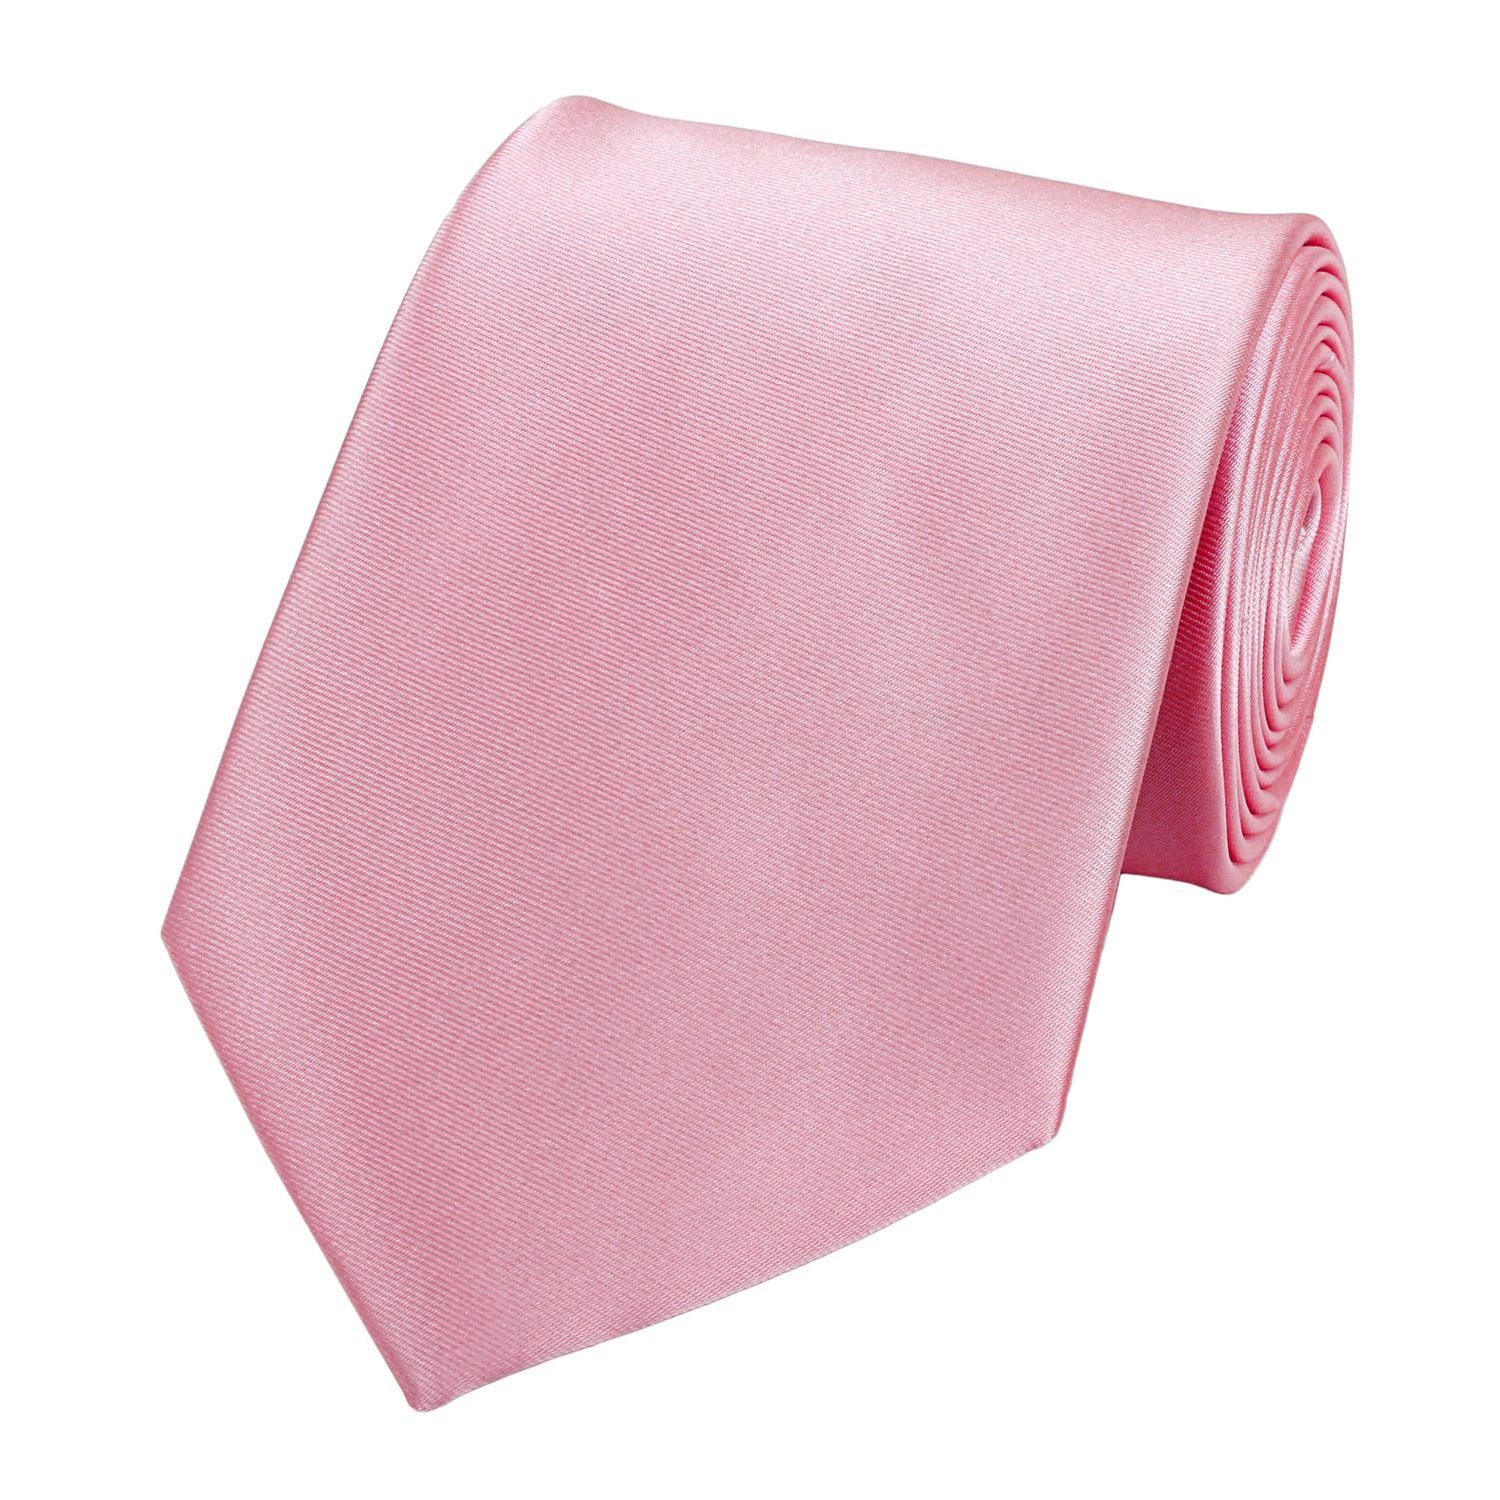 für jeden Anlass in braun einfarbige 6 cm Krawatte Fabio Farini klassische 